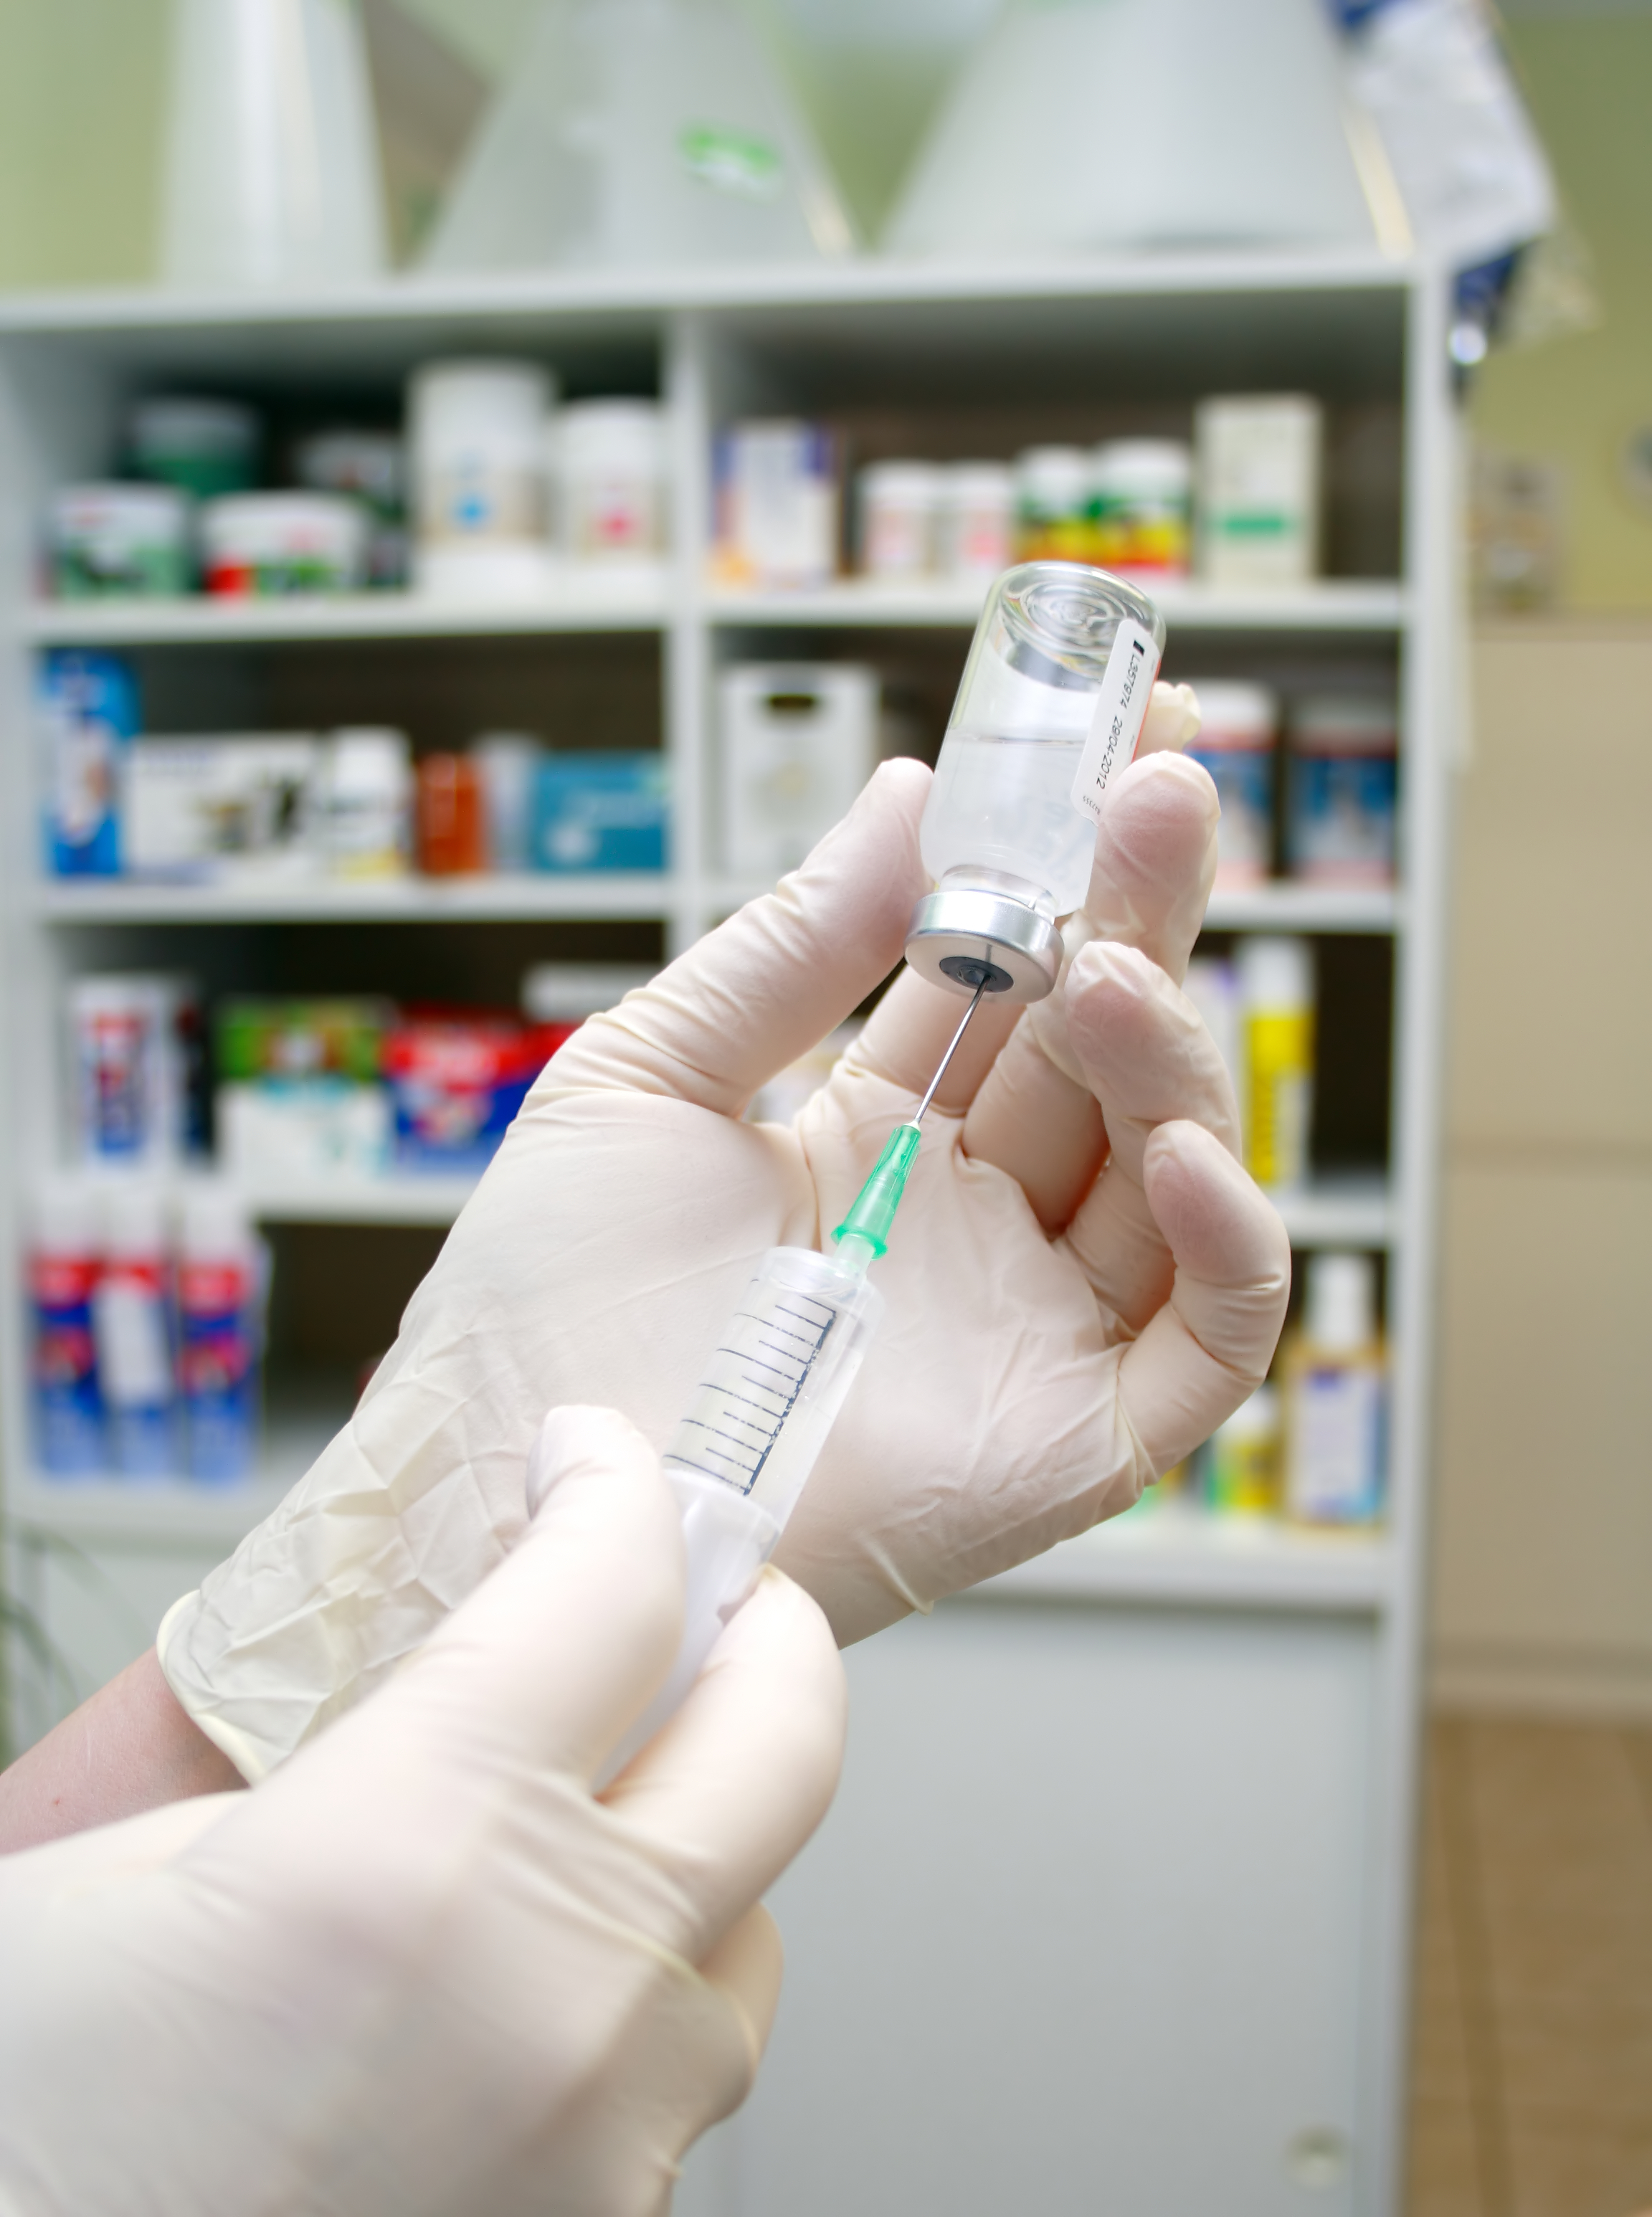 HPCSA warns that anti-vax doctors may face misconduct inquiries - Medical Brief - 10 Nov 2021